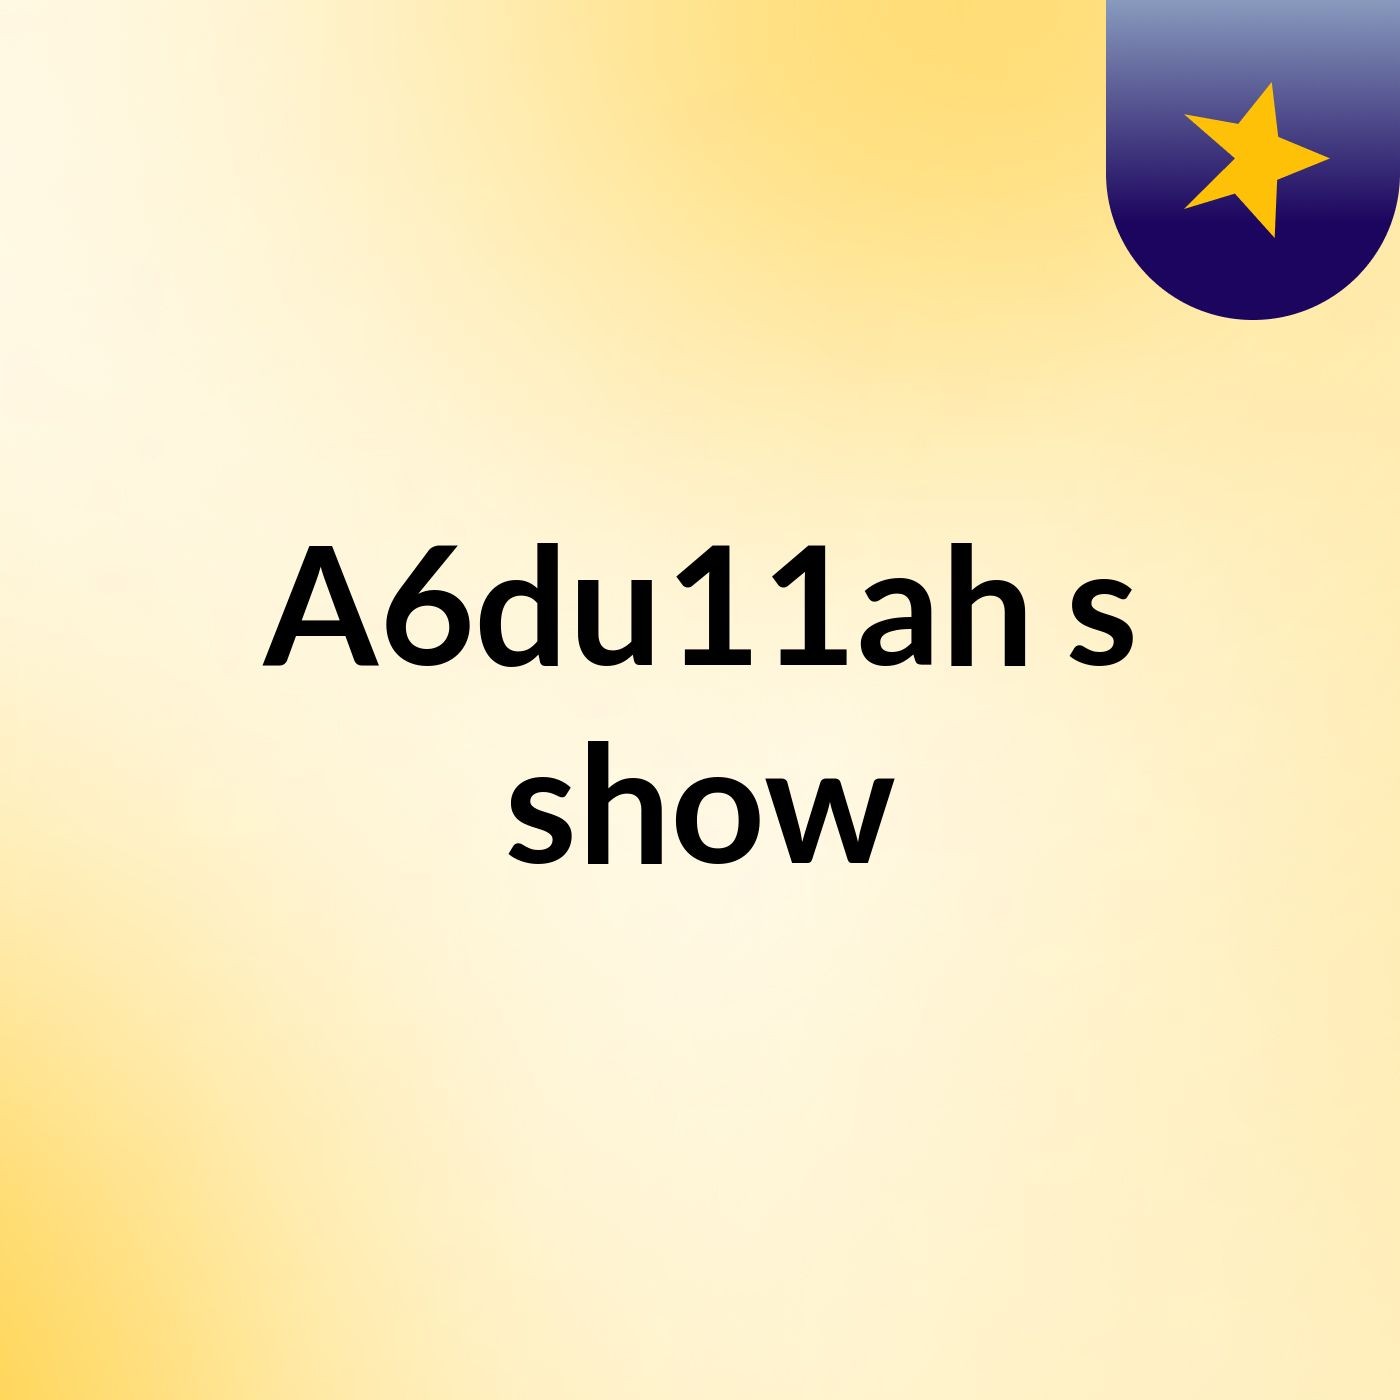 A6du11ah's show